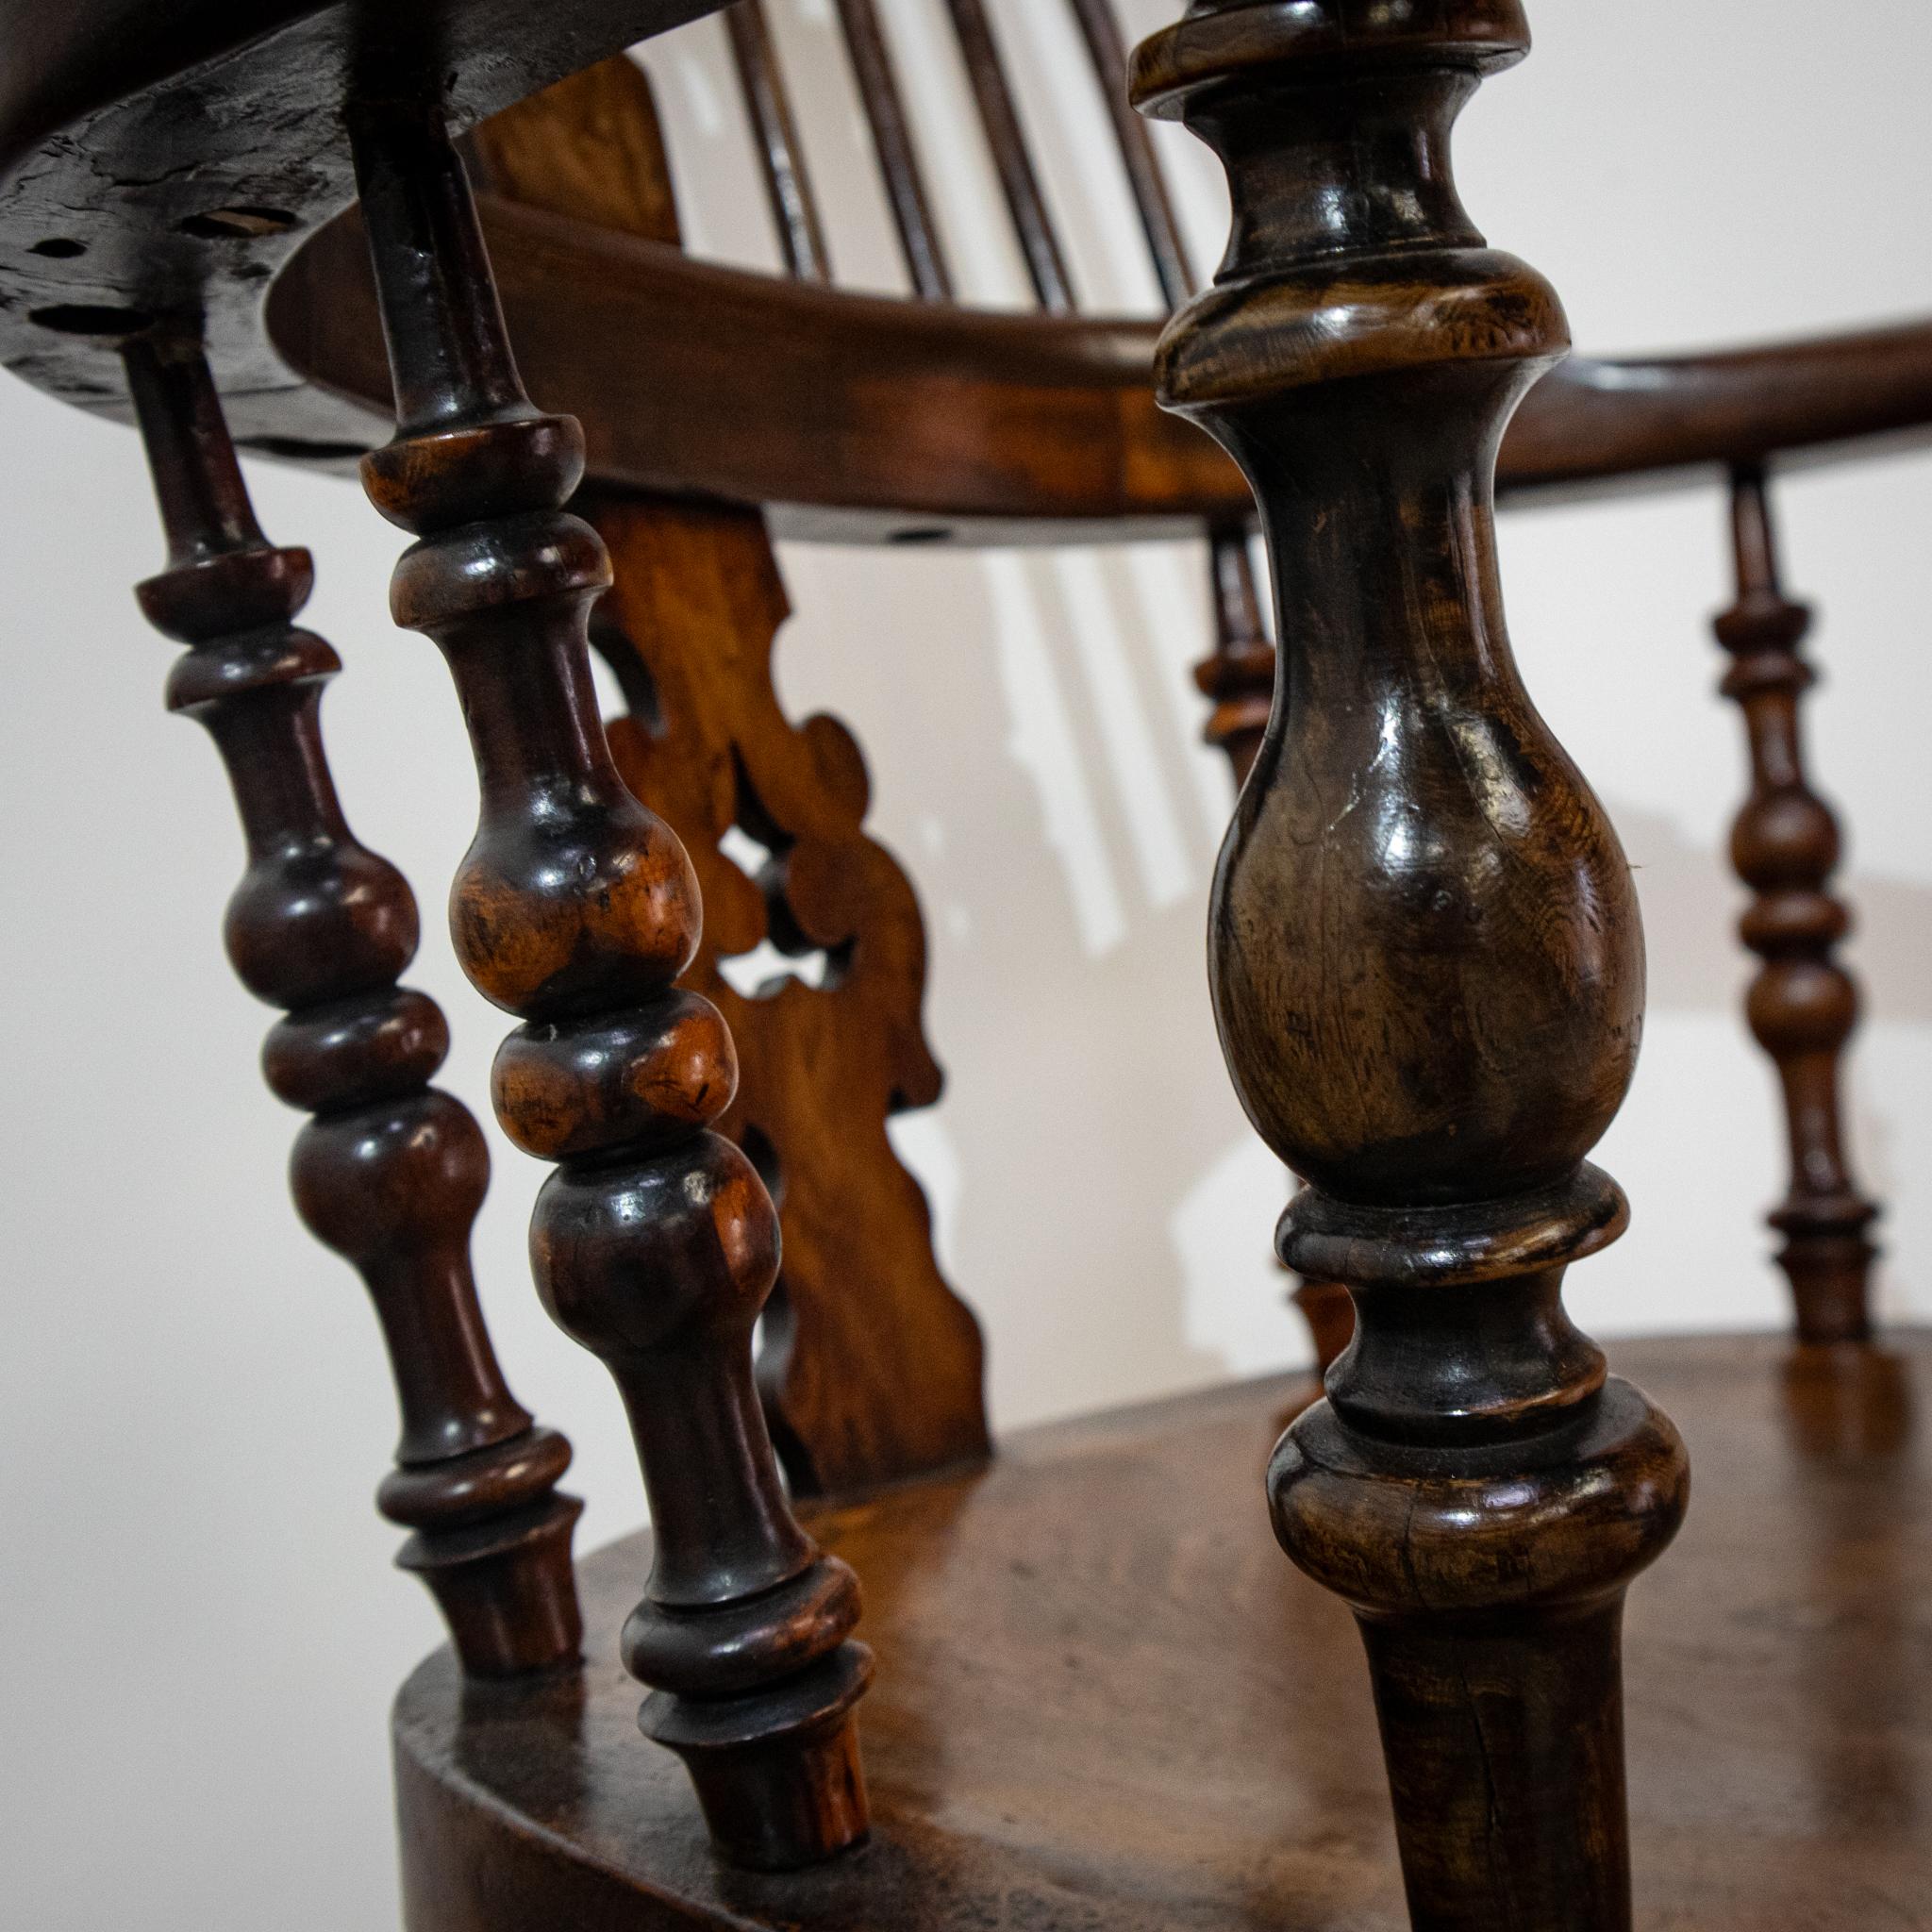 Un bel exemple de chaise Windsor traditionnelle à dossier haut, avec de larges accoudoirs aux extrémités tactiles et un dossier sculpté et percé. De façon inhabituelle, les fuseaux inférieurs sont tournés et s'accordent avec les pieds tournés, qui